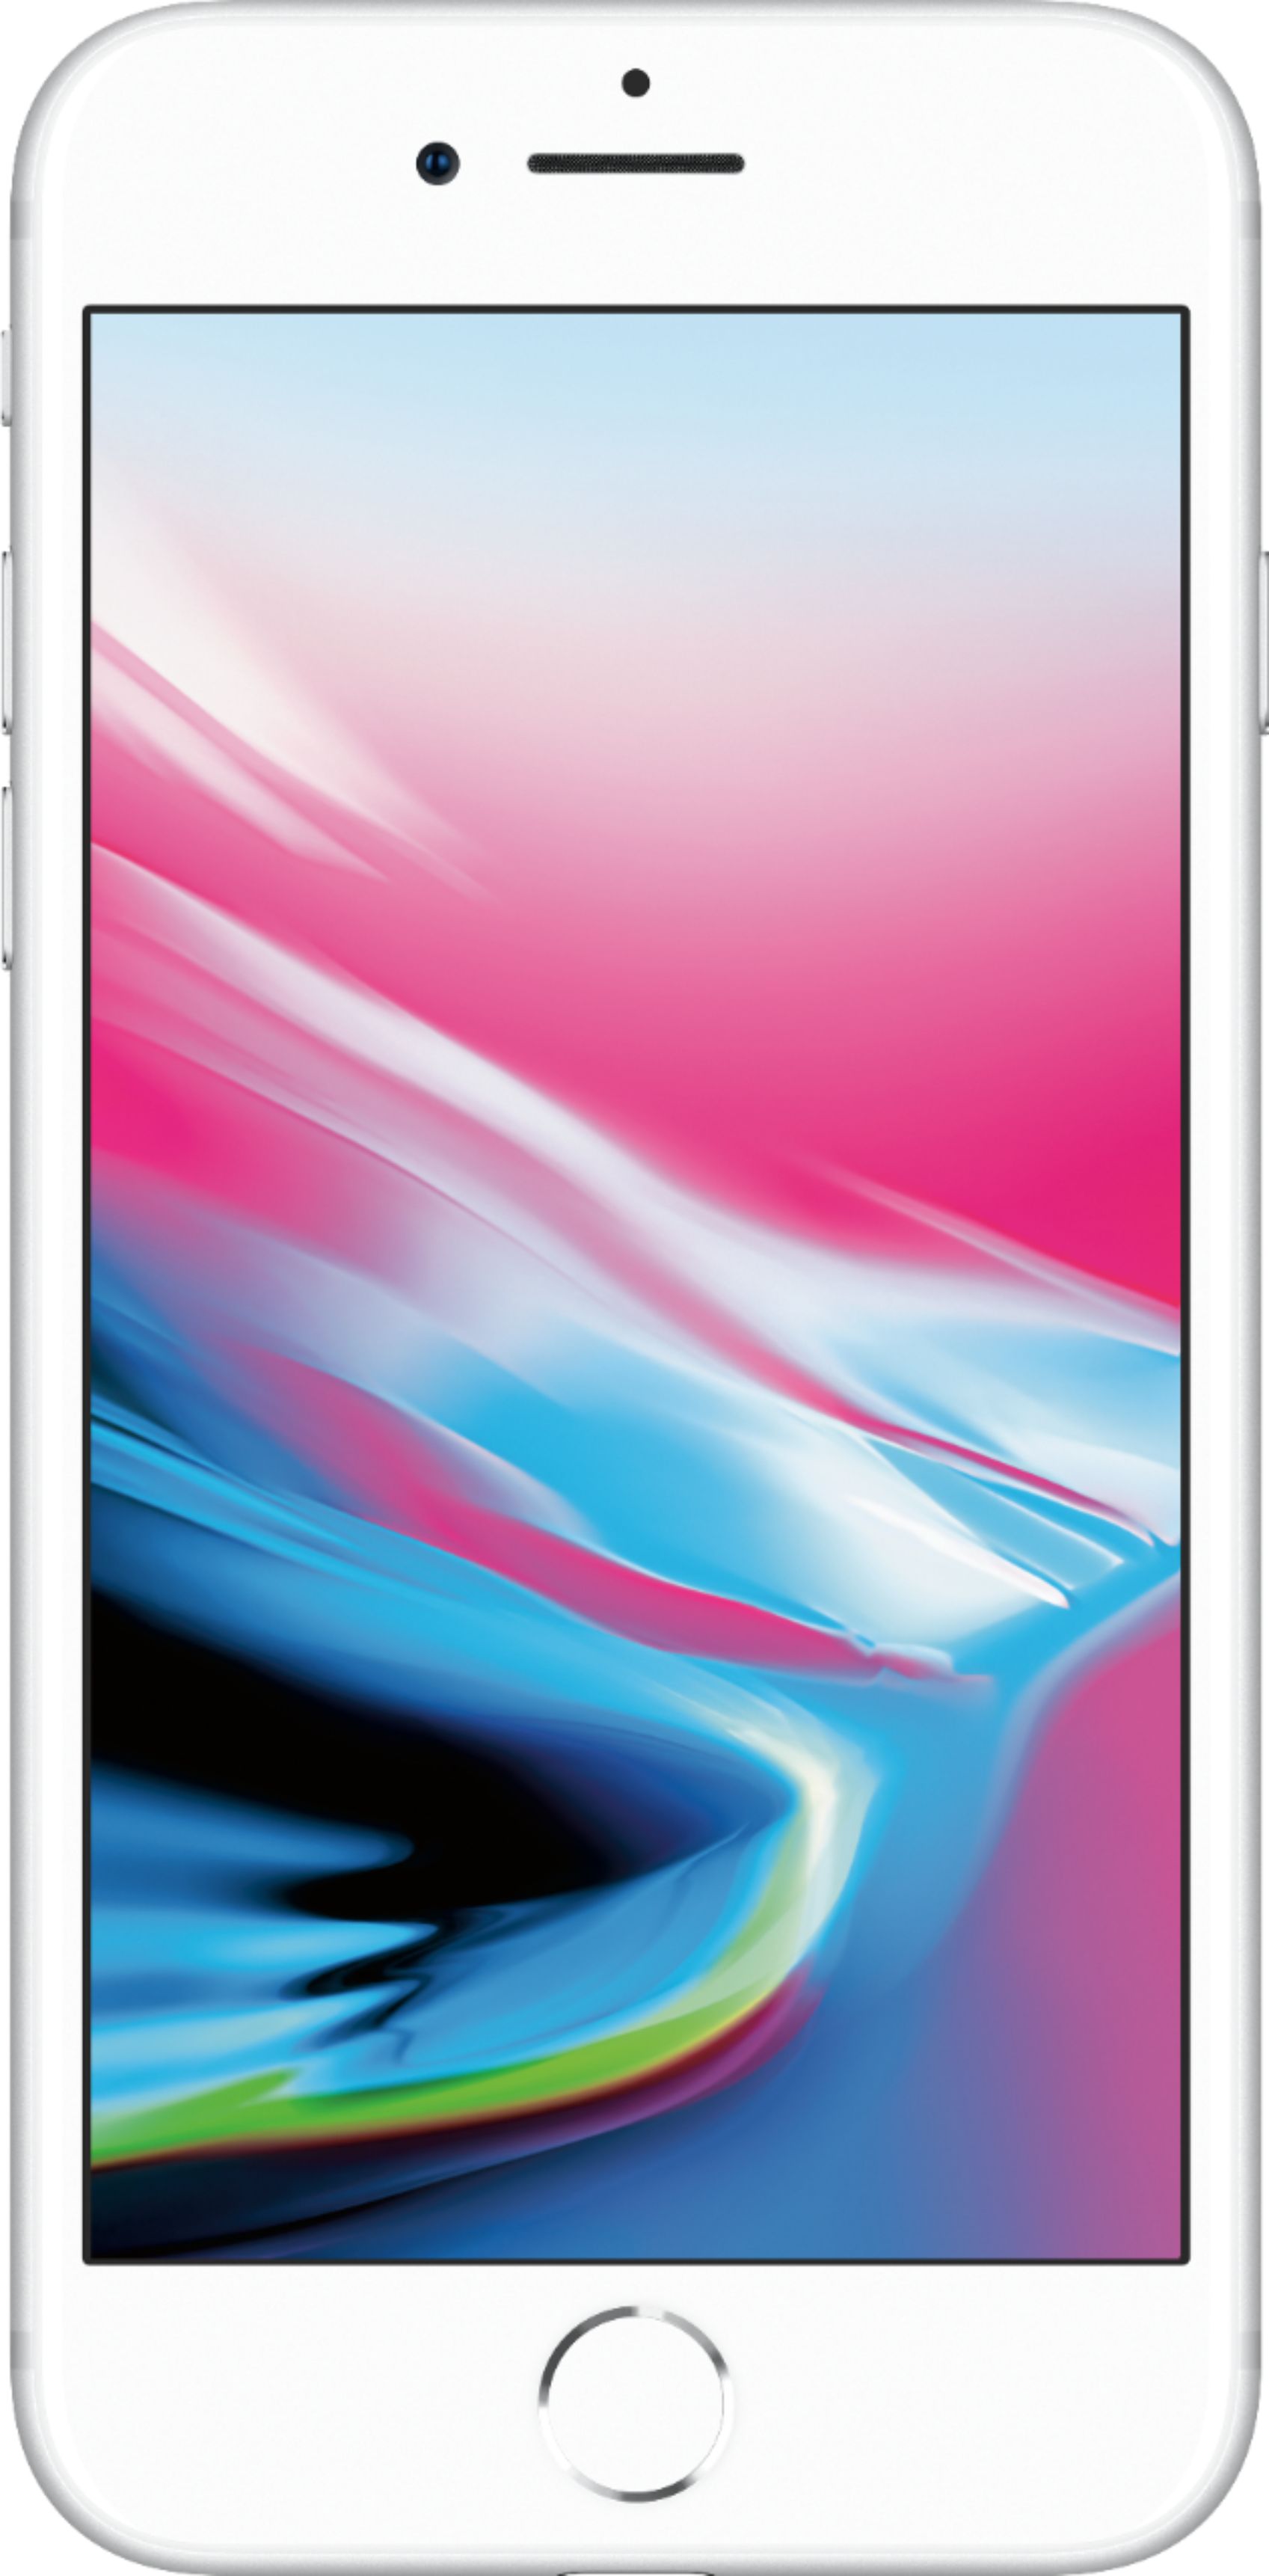 スマートフォン/携帯電話 スマートフォン本体 Apple iPhone 8 256GB Silver (Sprint) MQ7G2LL/A - Best Buy